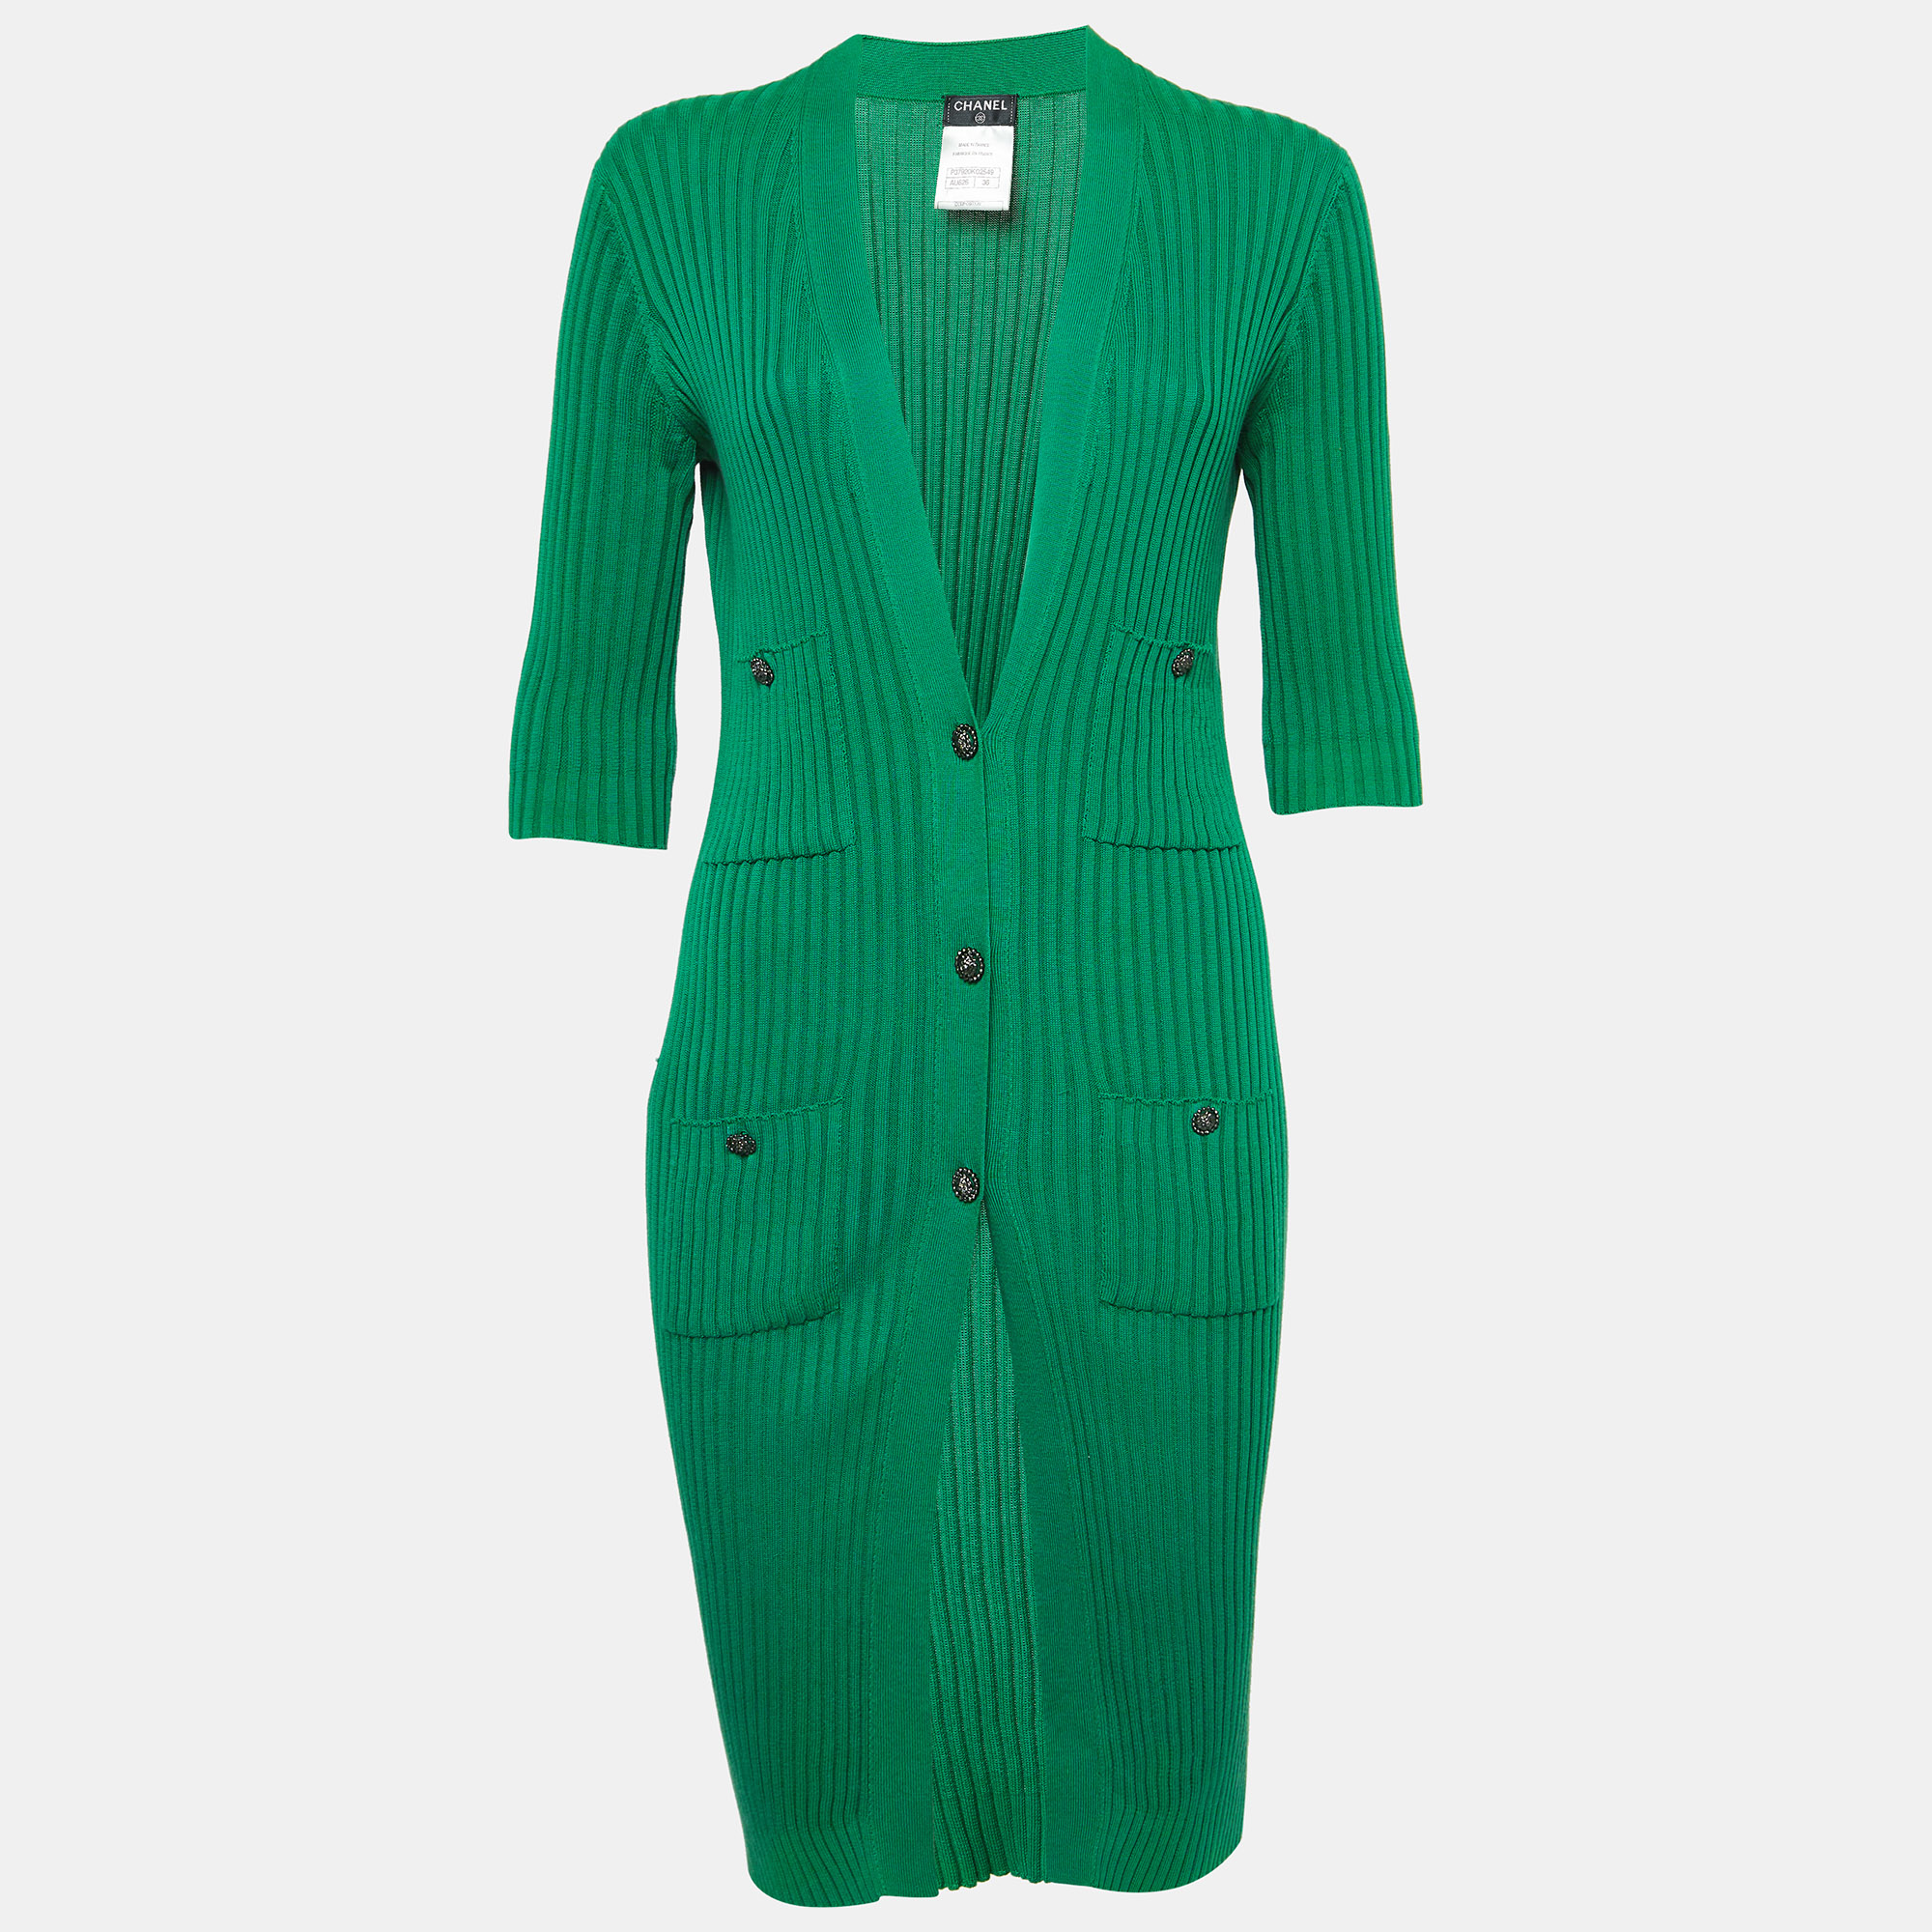 

Chanel Green Rib Knit Buttoned Midi Dress